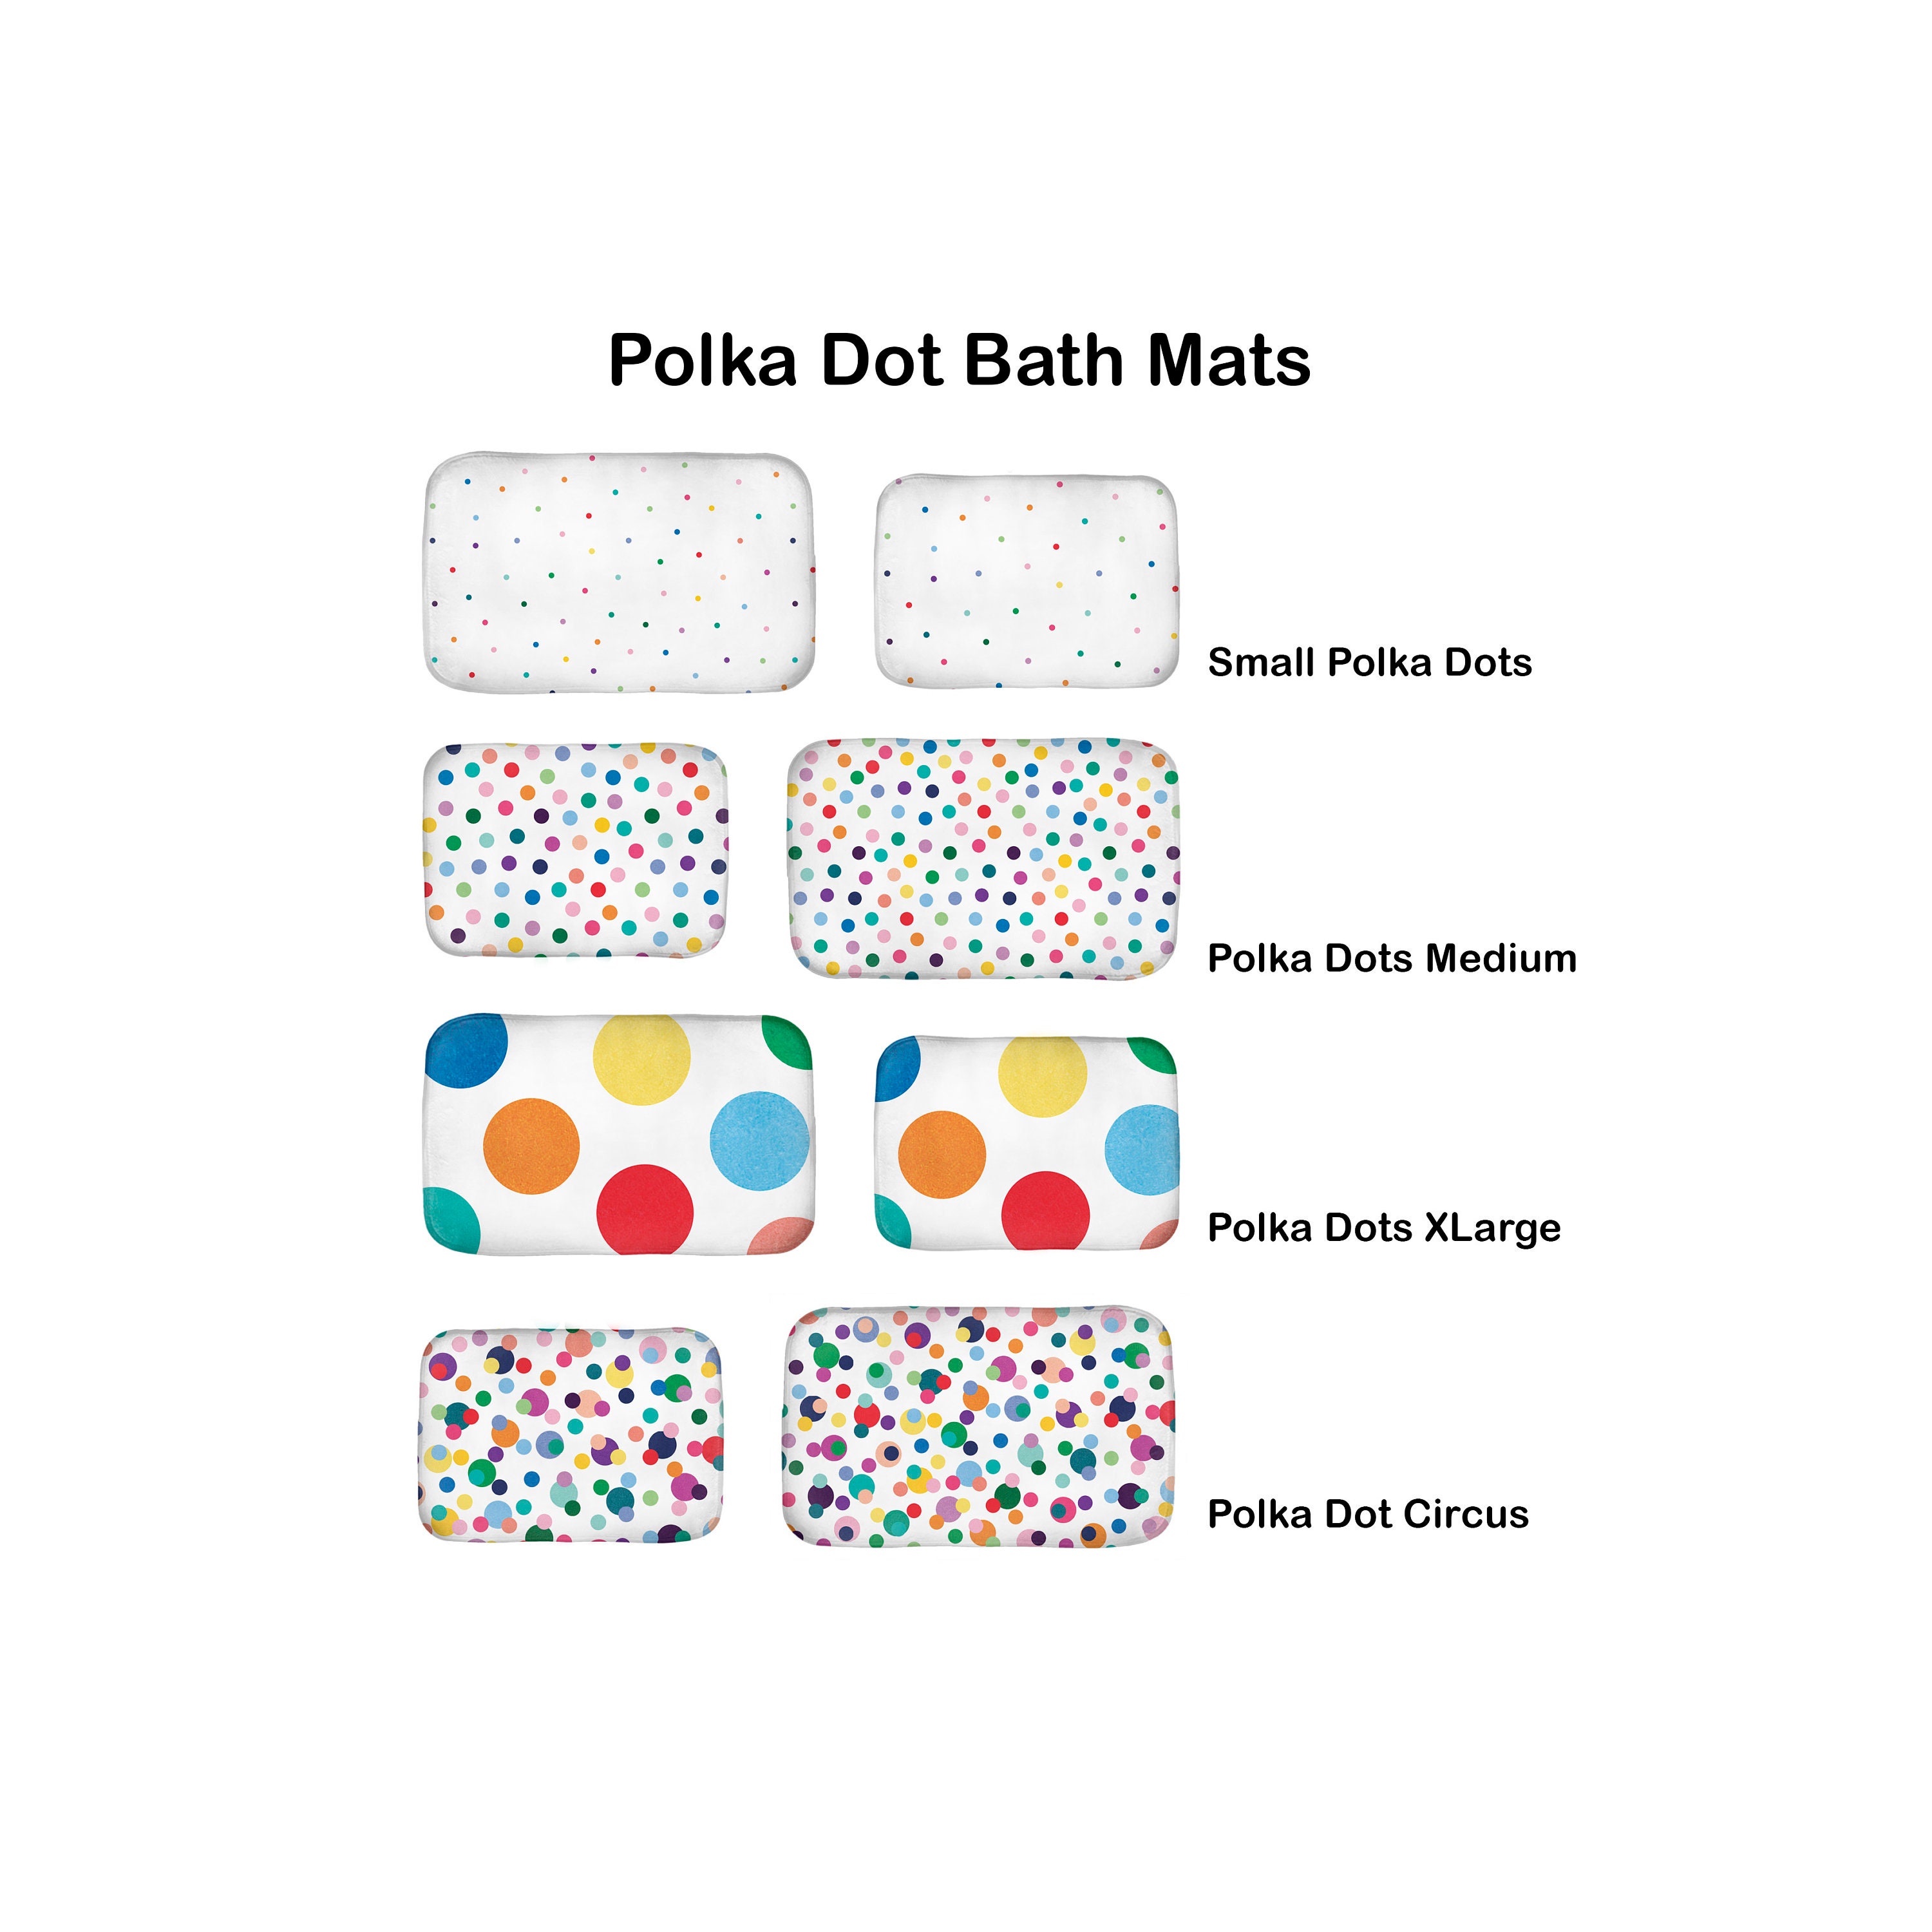 Polka Dot Hand Towels for Bathroom Set of 2 Vintage Black and White Doodle  Polka